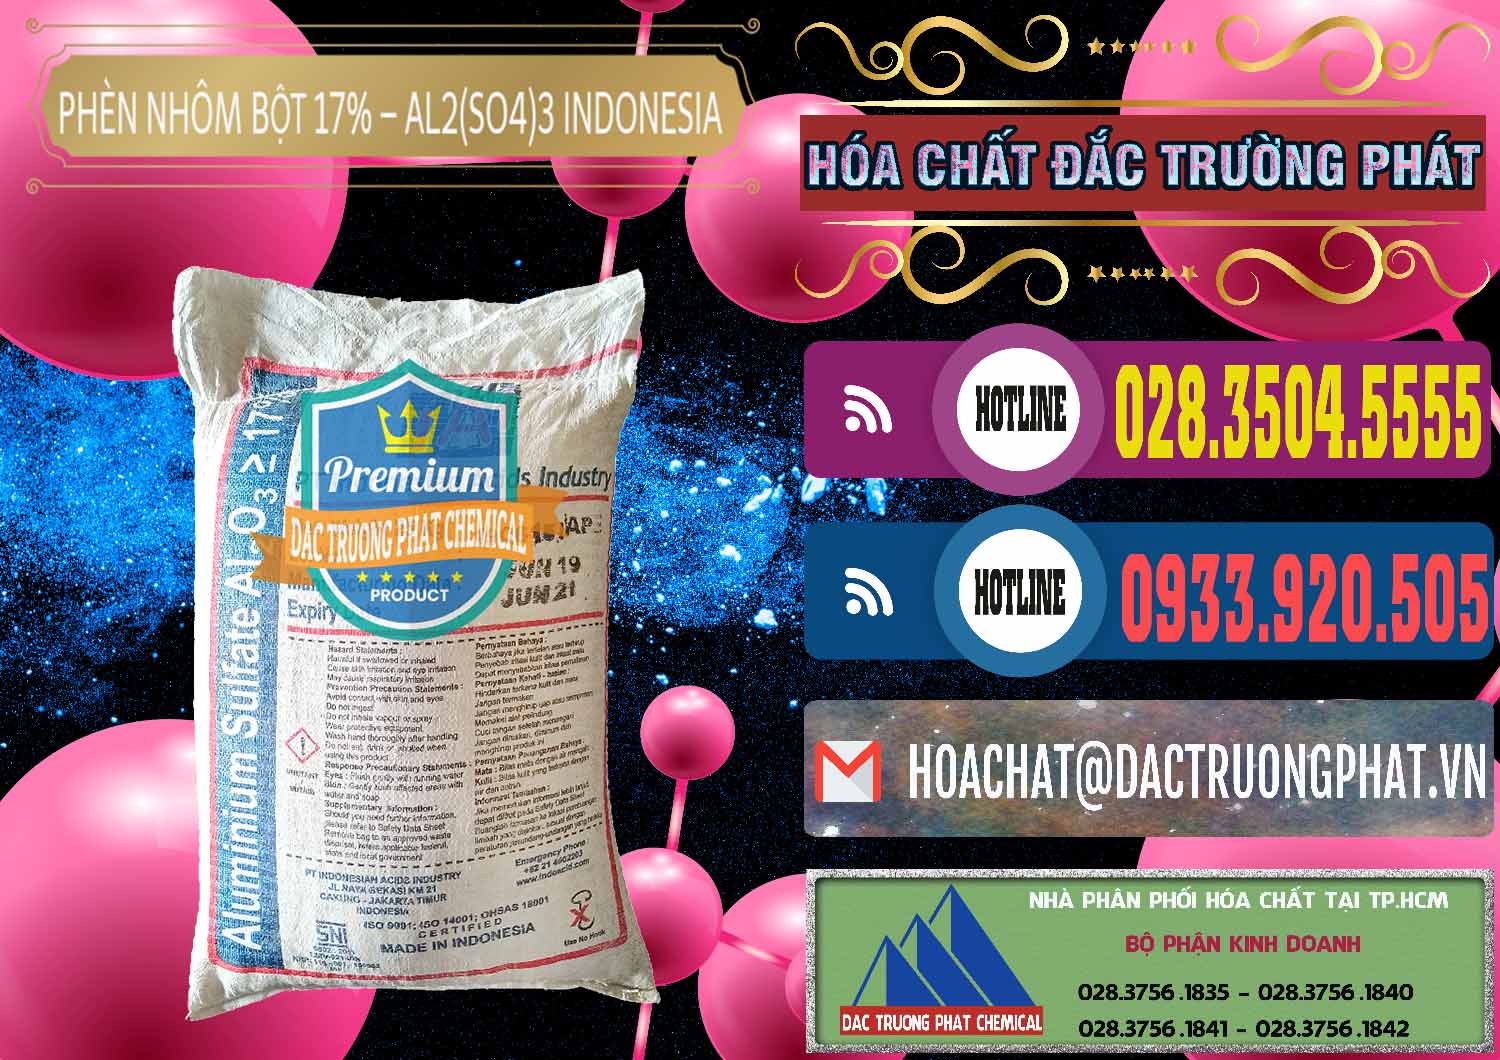 Công ty cung cấp và bán Phèn Nhôm Bột - Al2(SO4)3 17% bao 25kg Indonesia - 0114 - Chuyên bán _ cung cấp hóa chất tại TP.HCM - muabanhoachat.com.vn